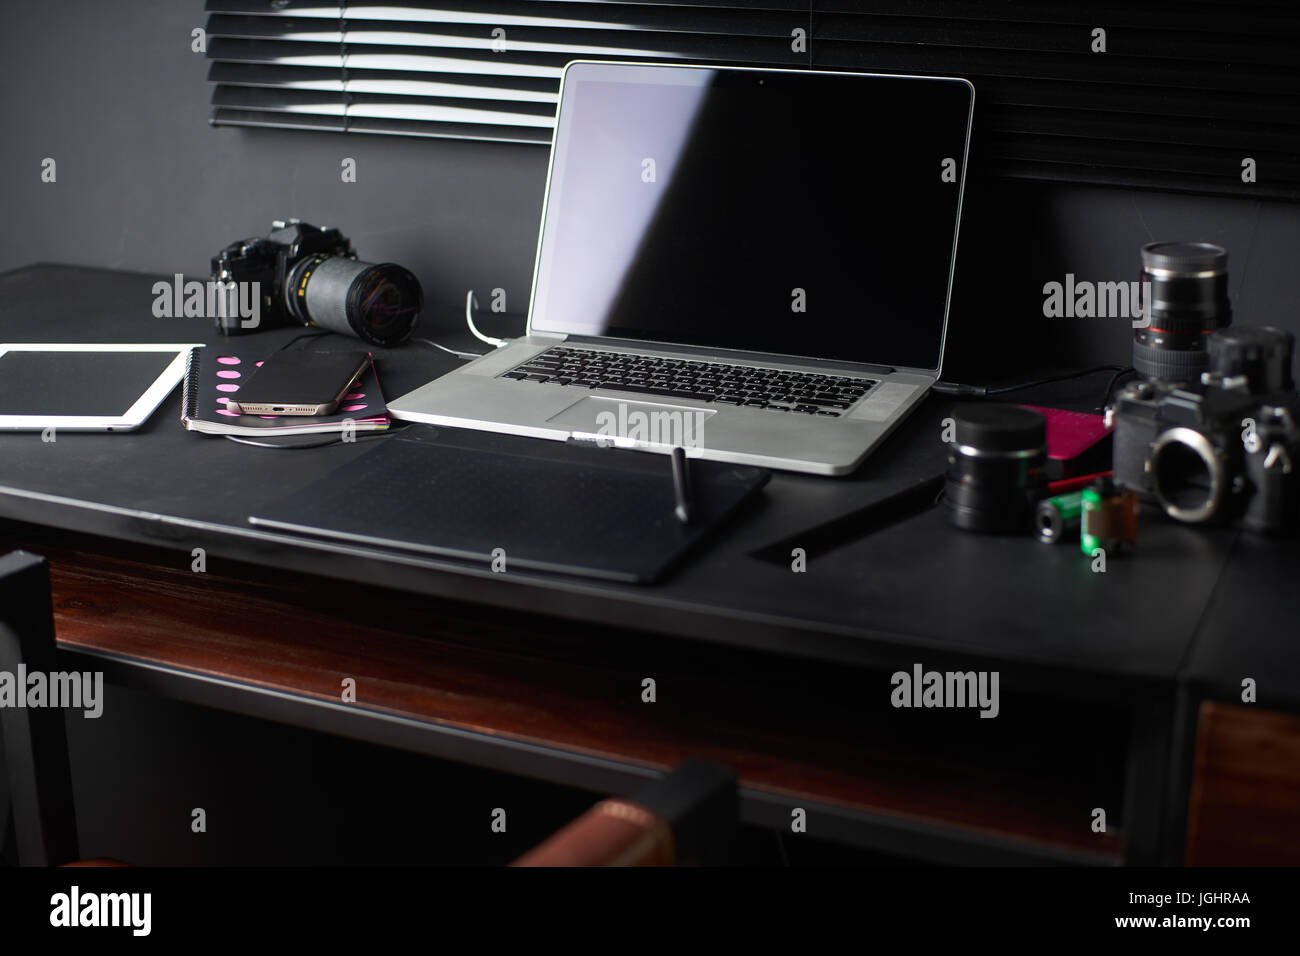 Arbeitsplatz auf schwarz Tabelle eines Fotografen oder Designer mit Laptop, retro Kamera, stilvolle Home Studio Konzept der Hipster. Markierte konzentrieren. Stockfoto